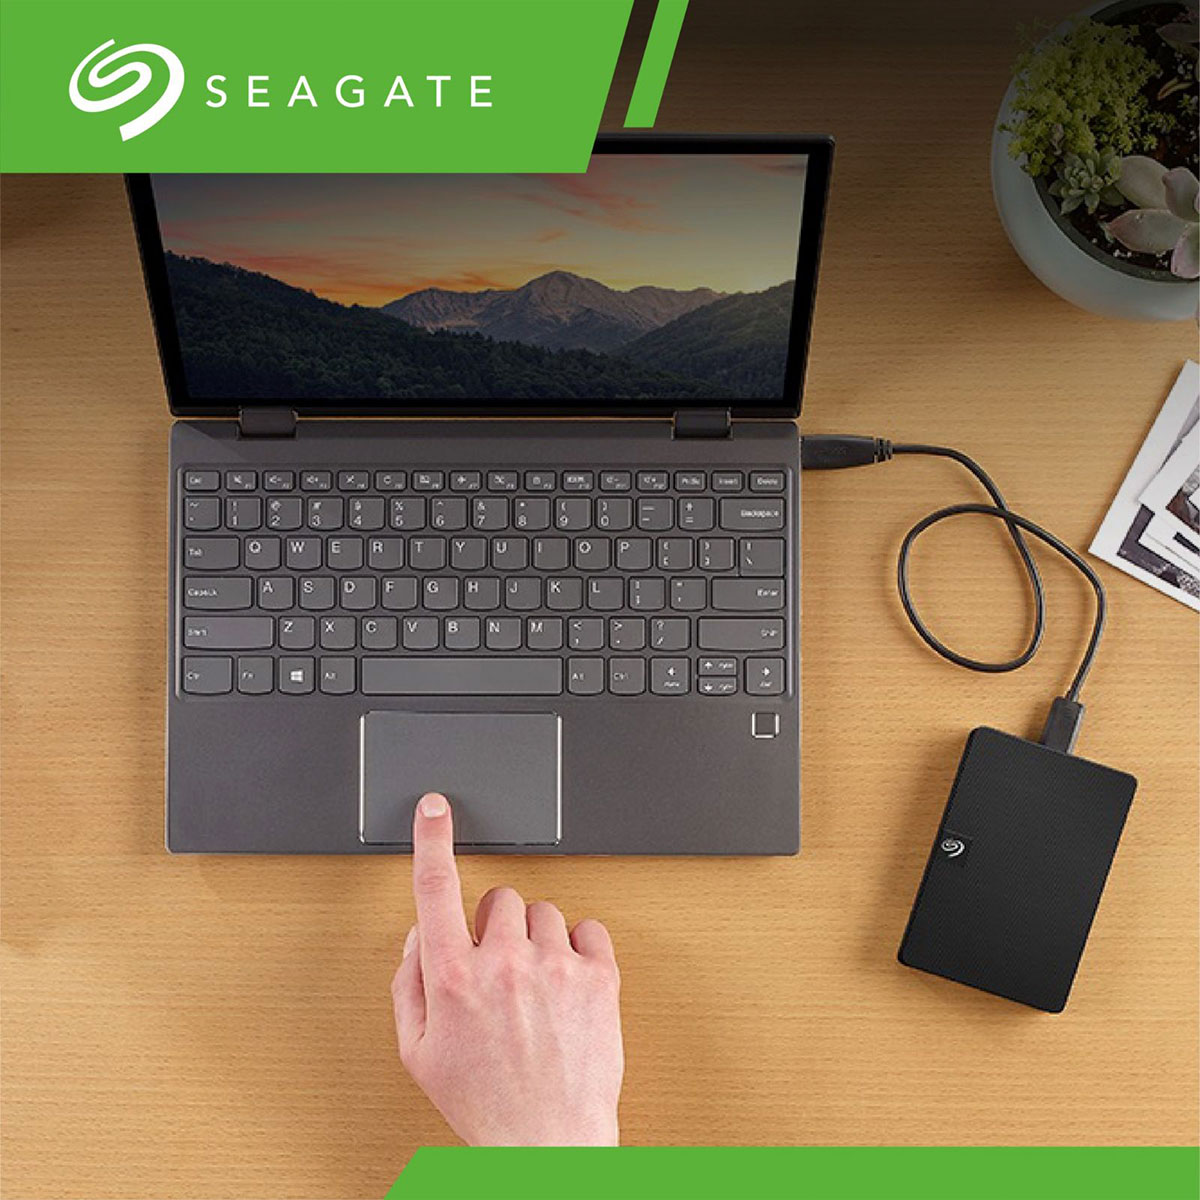 希捷 Seagate 輕鬆一鍵備份，可依需求安排每小時、每天、每週或每月自動備份檔案，個人美學、實用機能一次擁有。